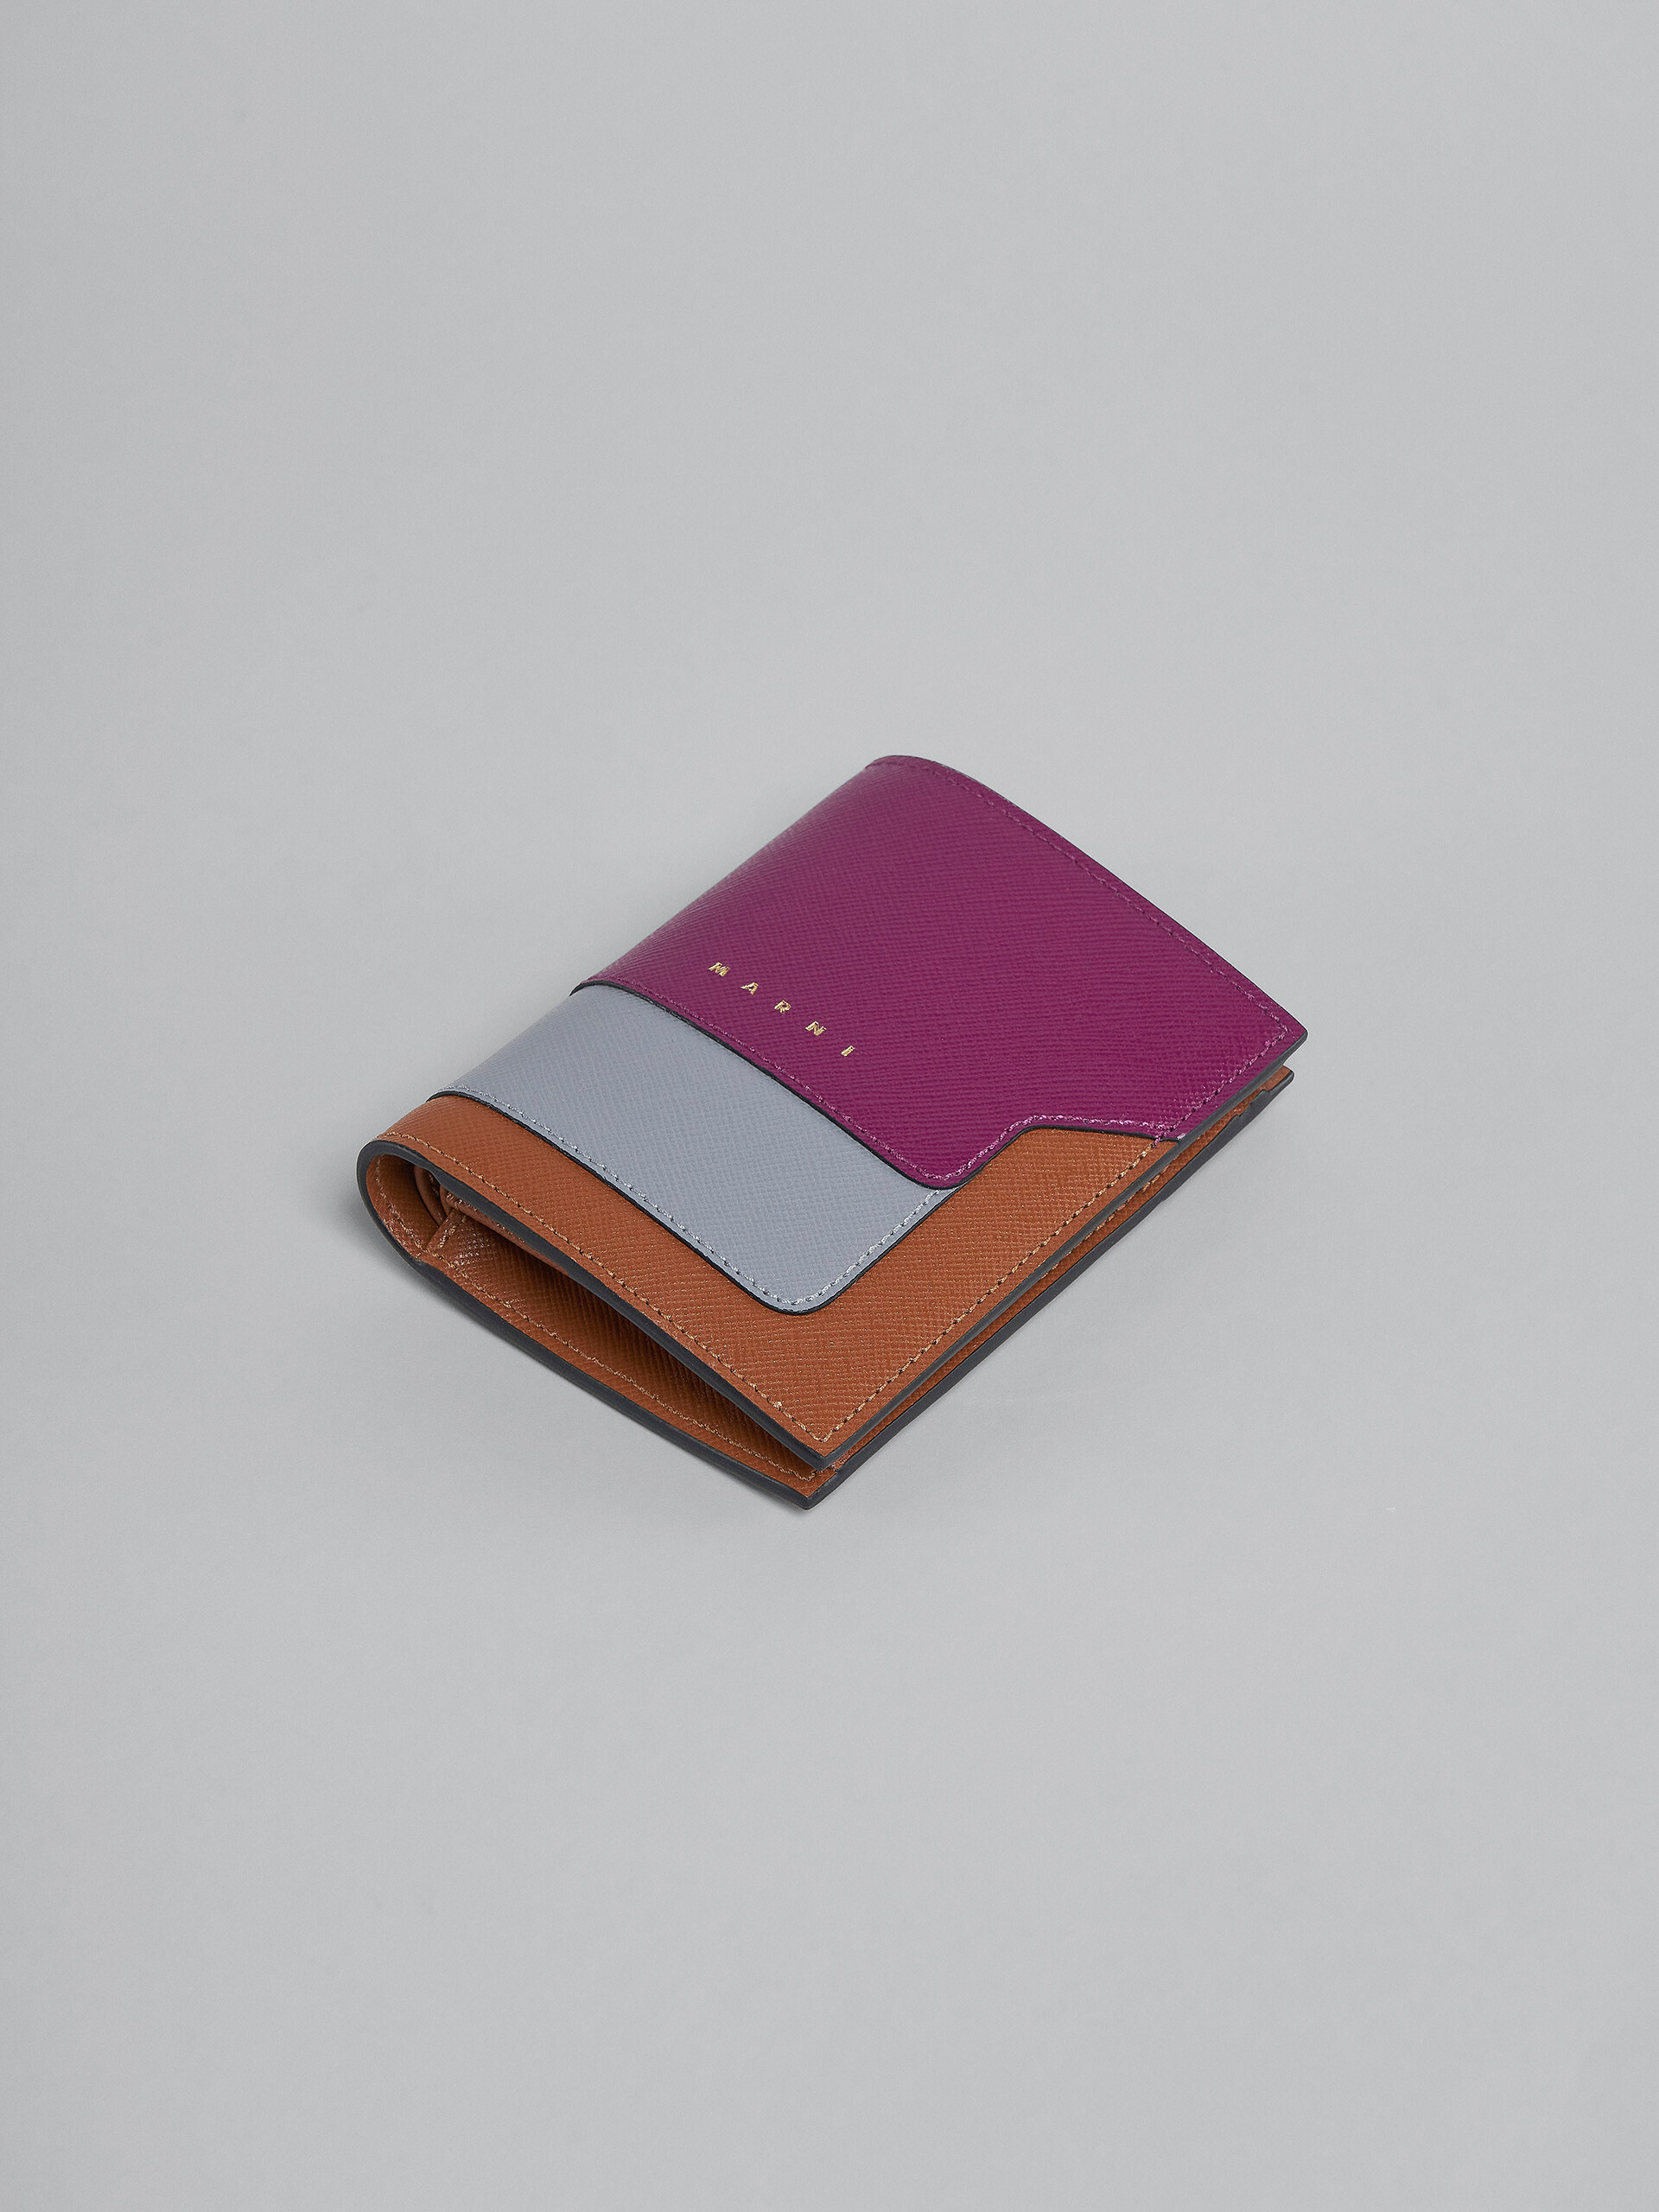 Zweifache Faltbrieftasche aus Saffiano-Leder in Violett, Grau und Braun - Brieftaschen - Image 5